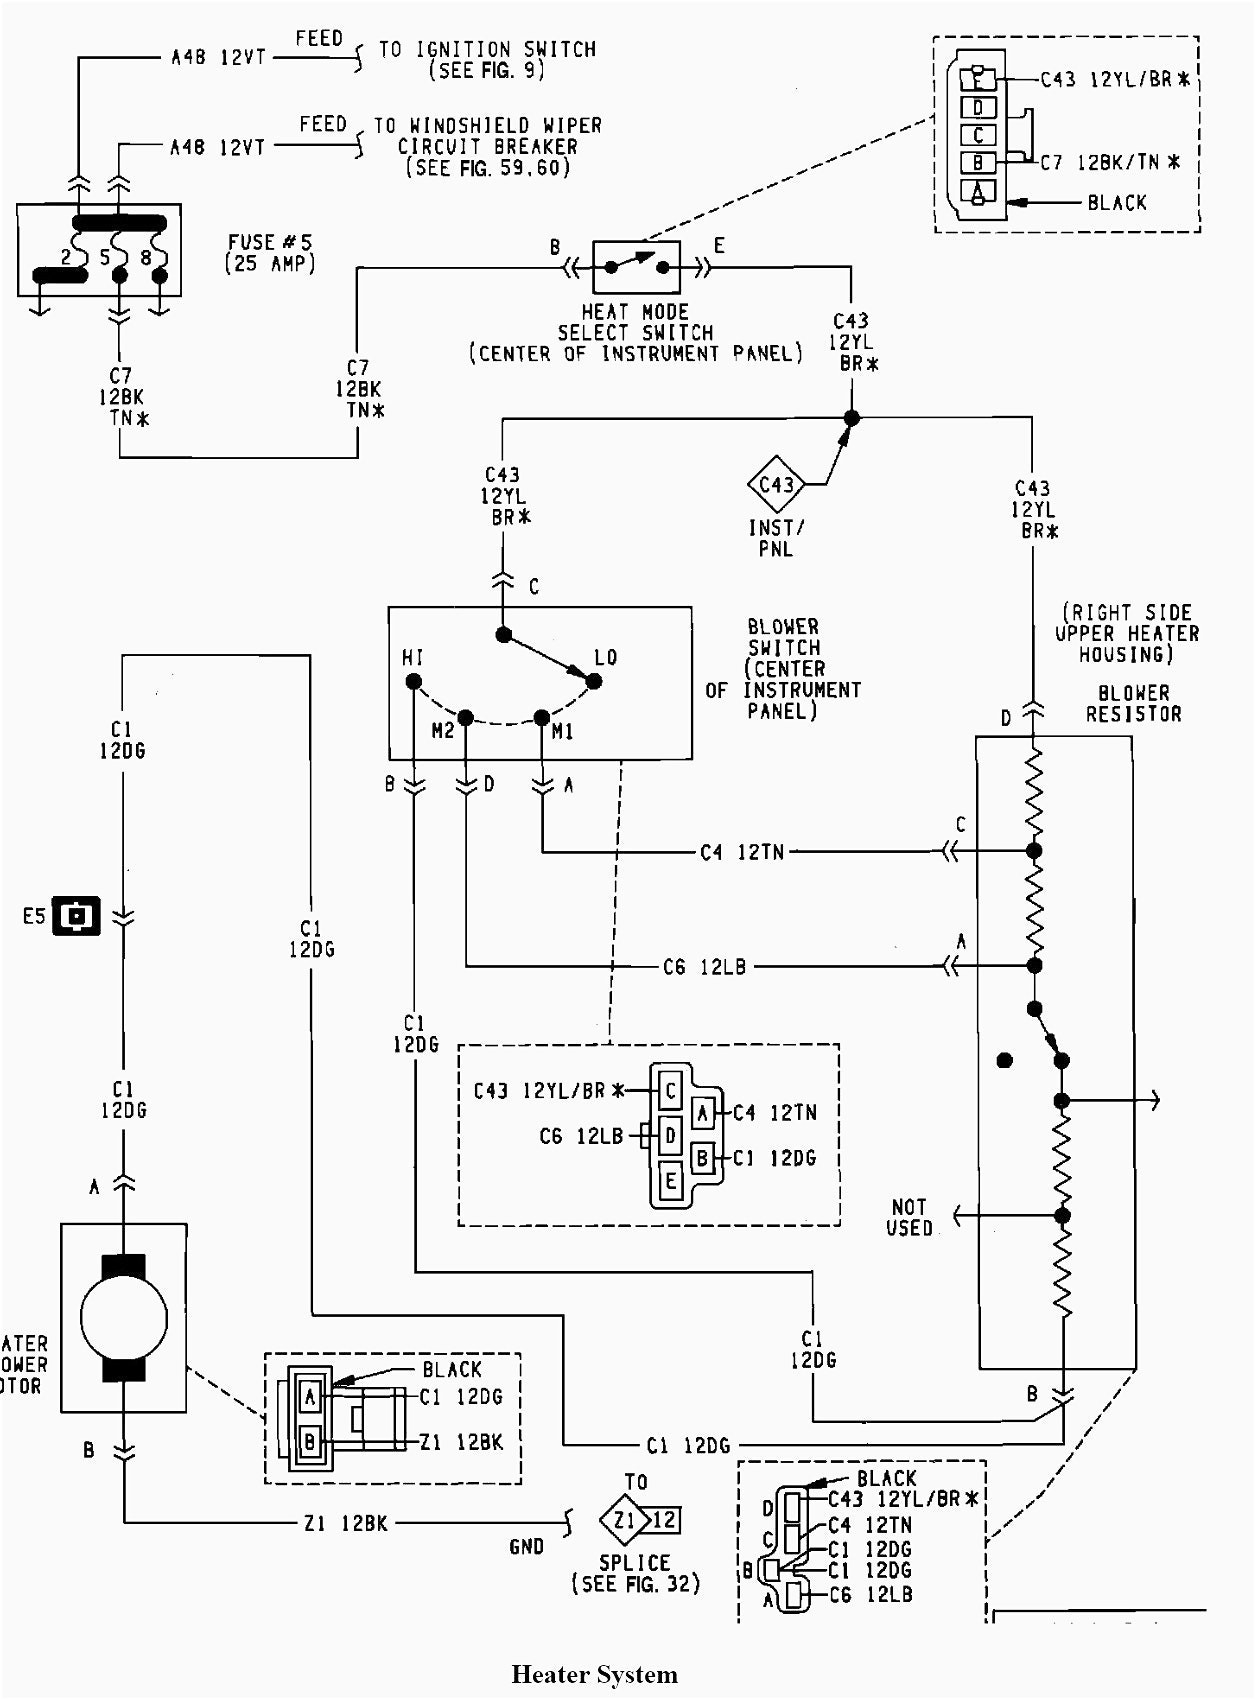 Ferrari Head Unit Wiring Diagram Explore Schematic Miata Stereo Wiring Diagram Auto Diagrams Instructions Rh